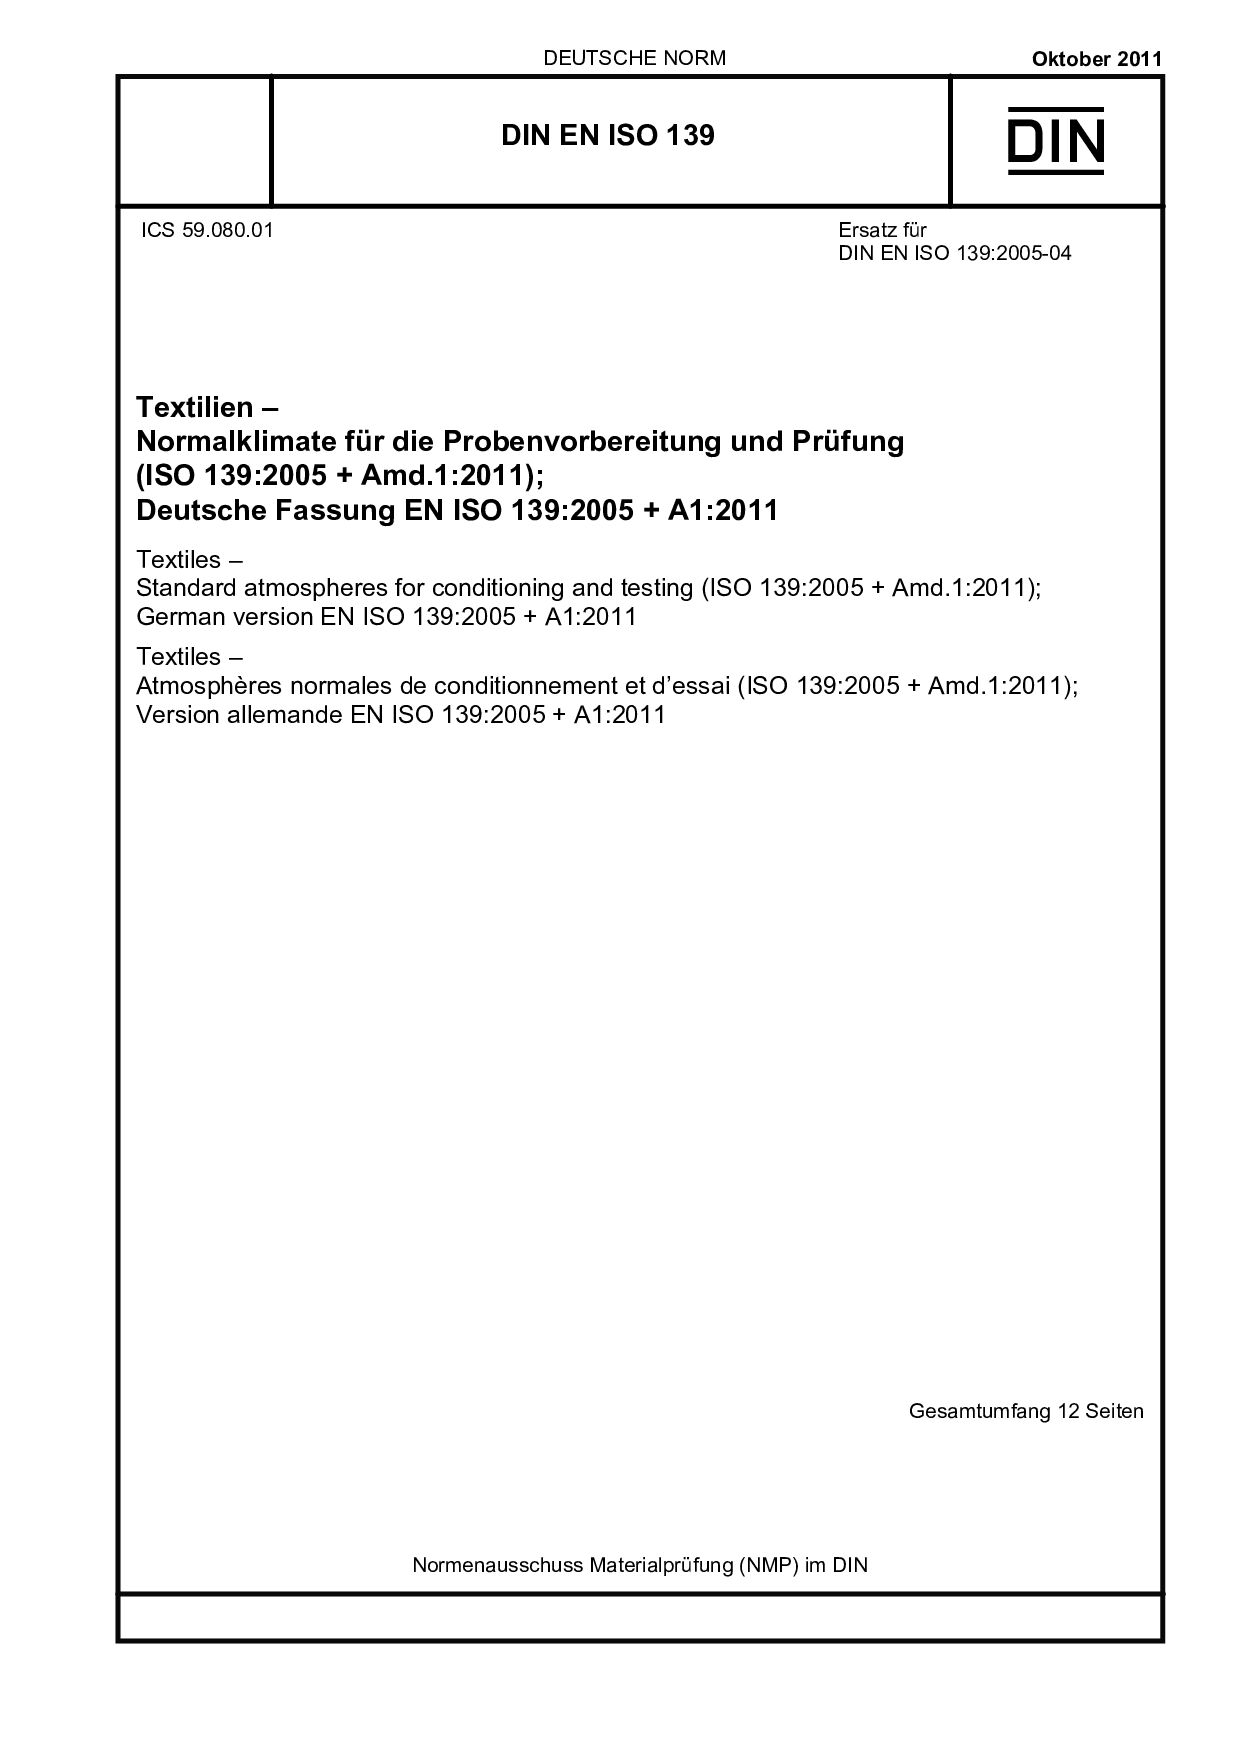 DIN EN ISO 139:2011-10